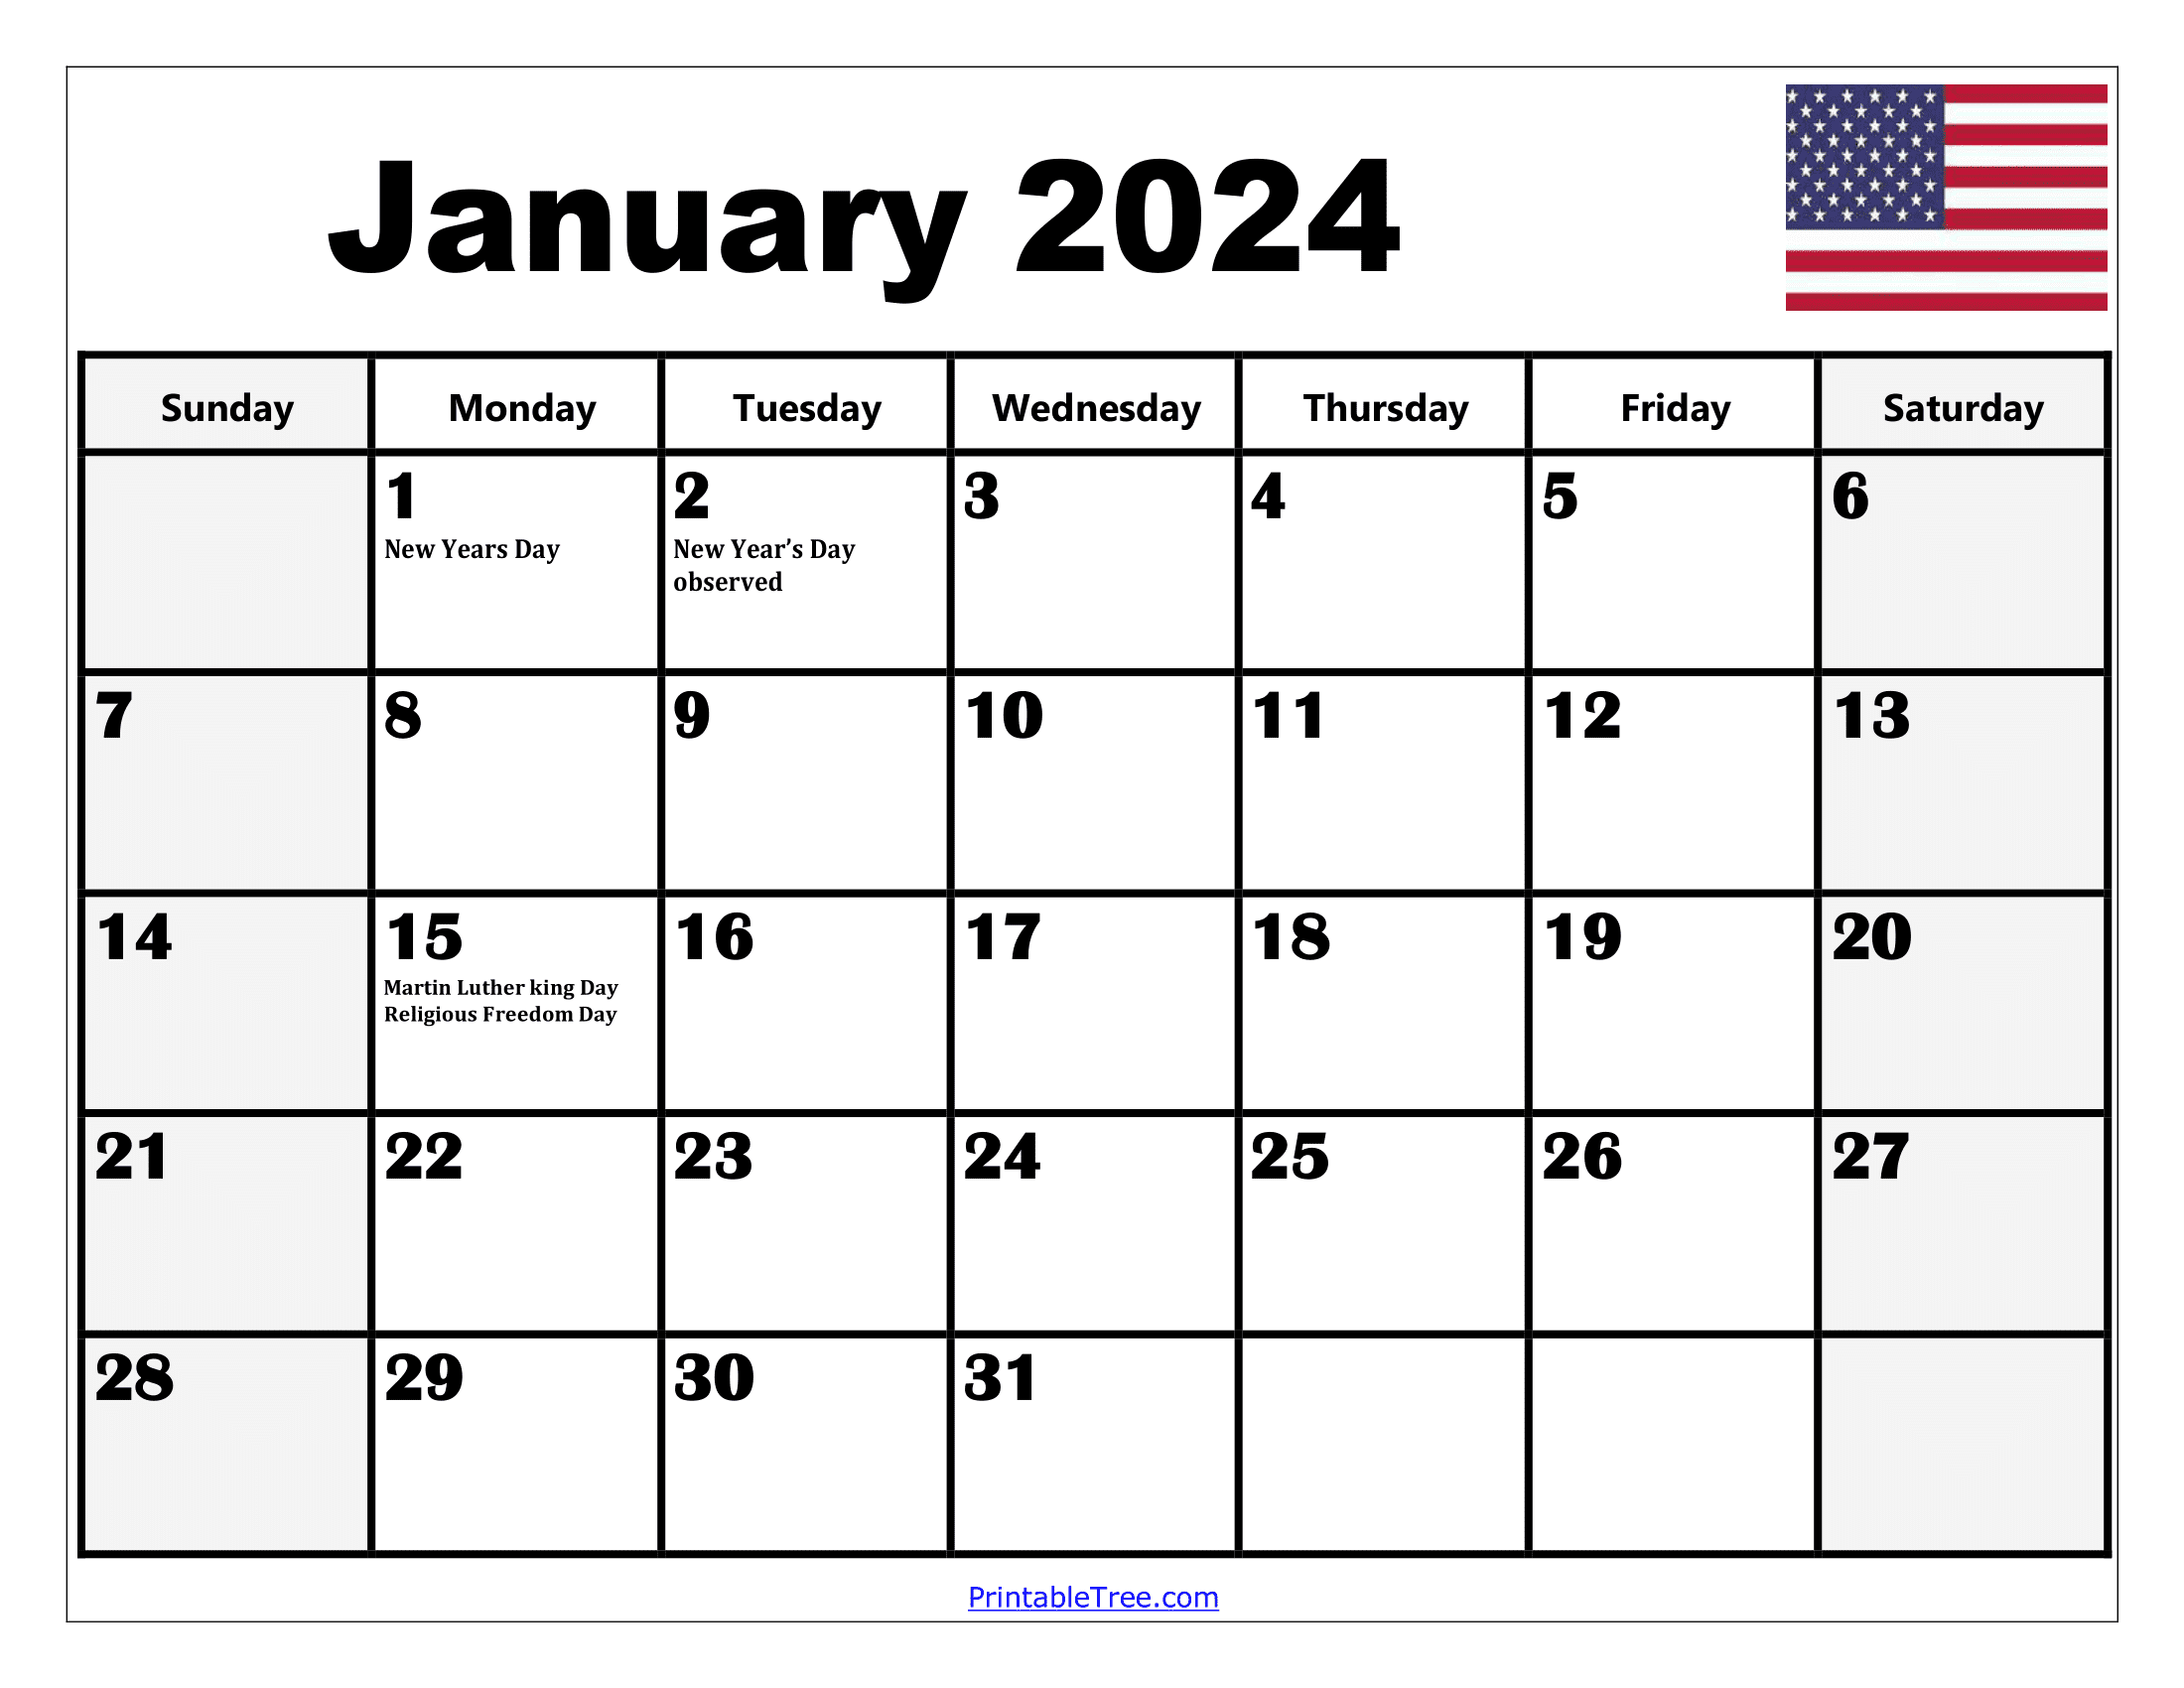 2024 Holiday Calendar Days Free Download Nov 2024 Calendar - Free Printable 2024 Calendar With Holidays Word